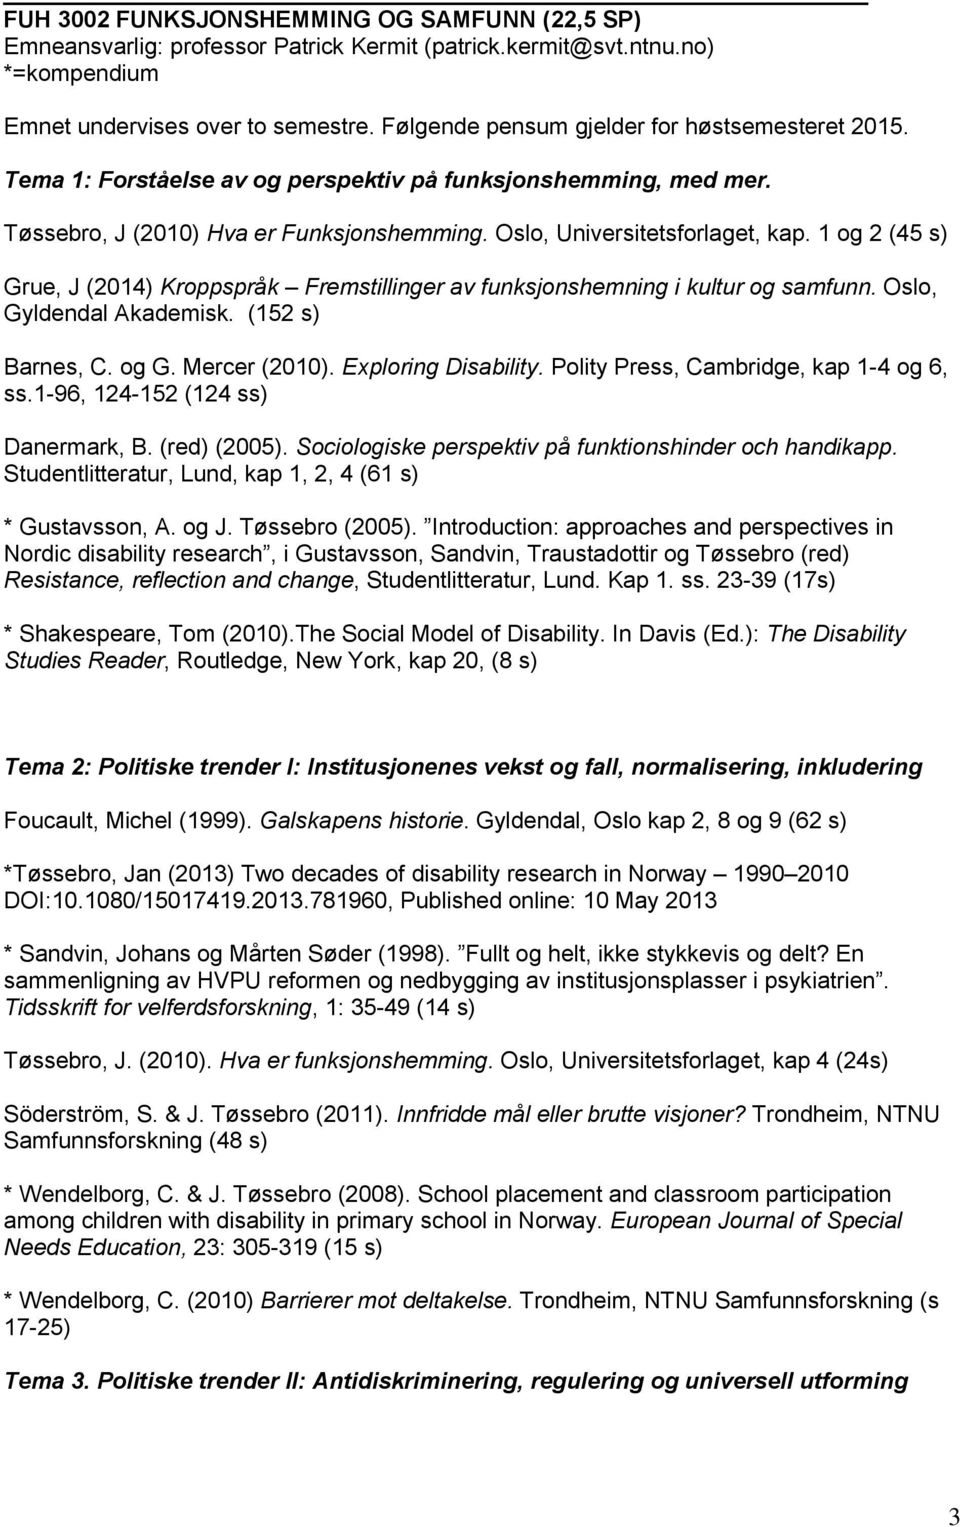 1 og 2 (45 s) Grue, J (2014) Kroppspråk Fremstillinger av funksjonshemning i kultur og samfunn. Oslo, Gyldendal Akademisk. (152 s) Barnes, C. og G. Mercer (2010). Exploring Disability.